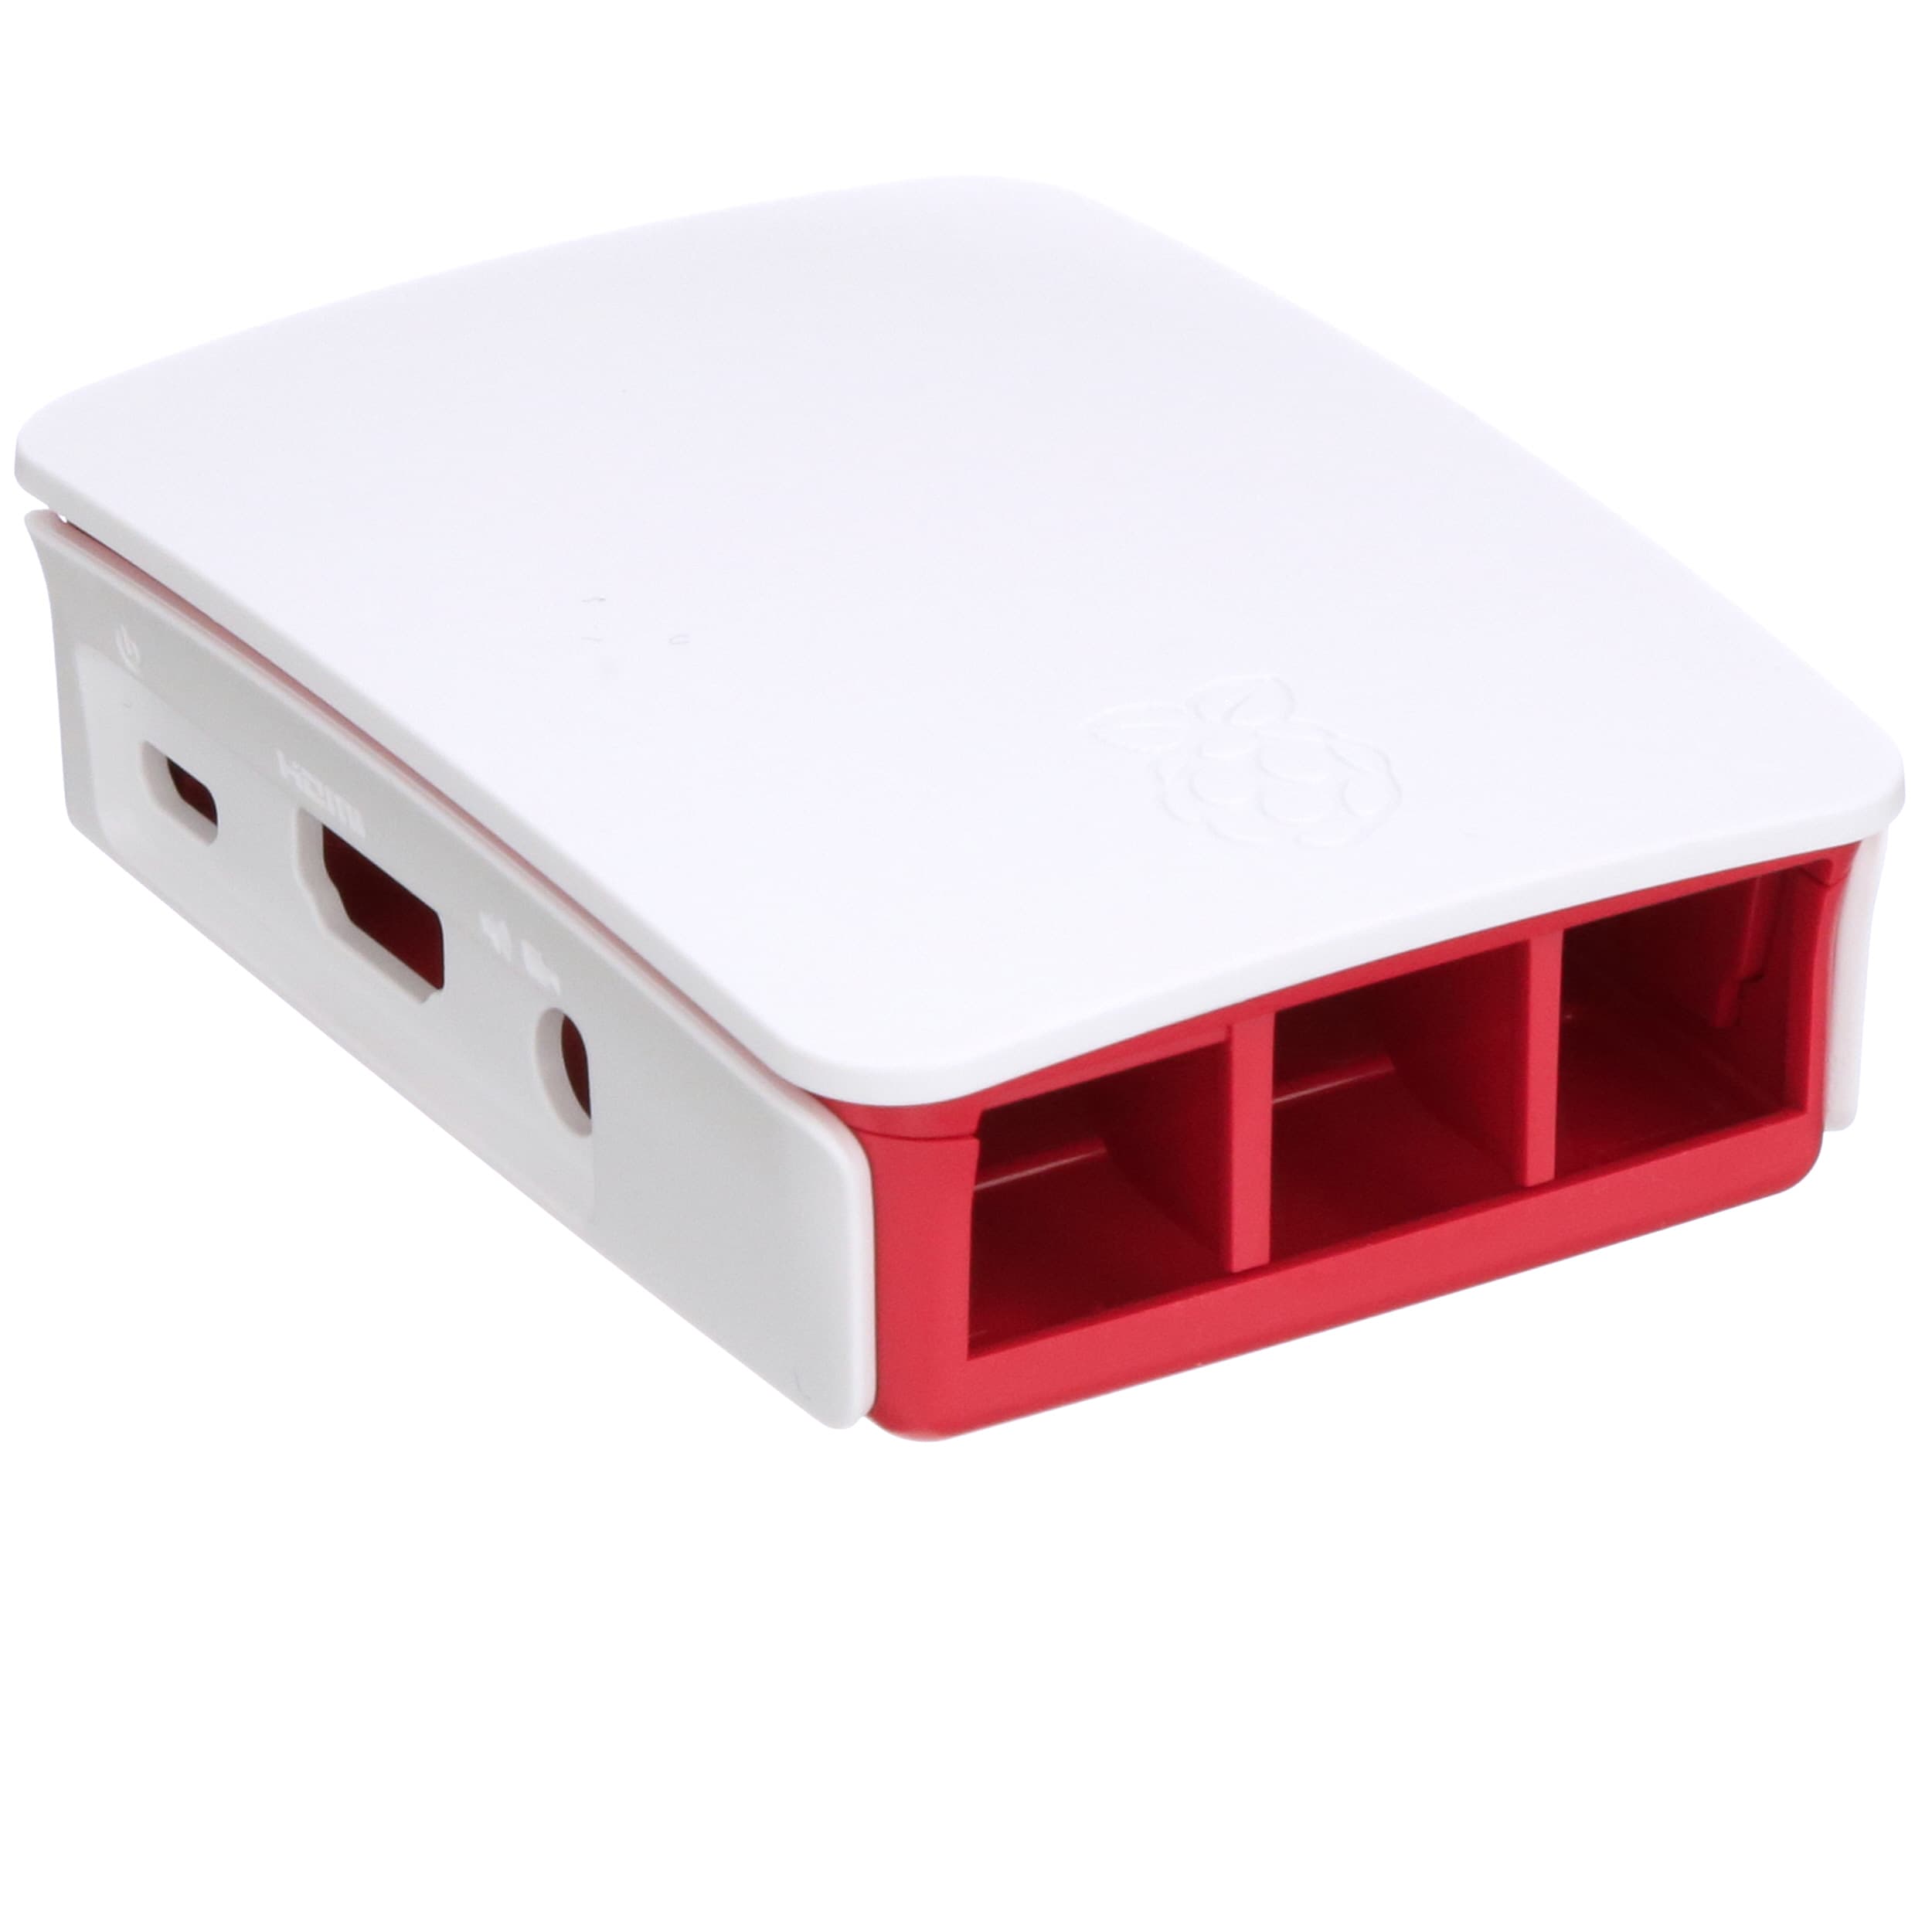 Red/White Official Raspberry Pi 3 Case for Raspberry Pi 3 Model$-$ 